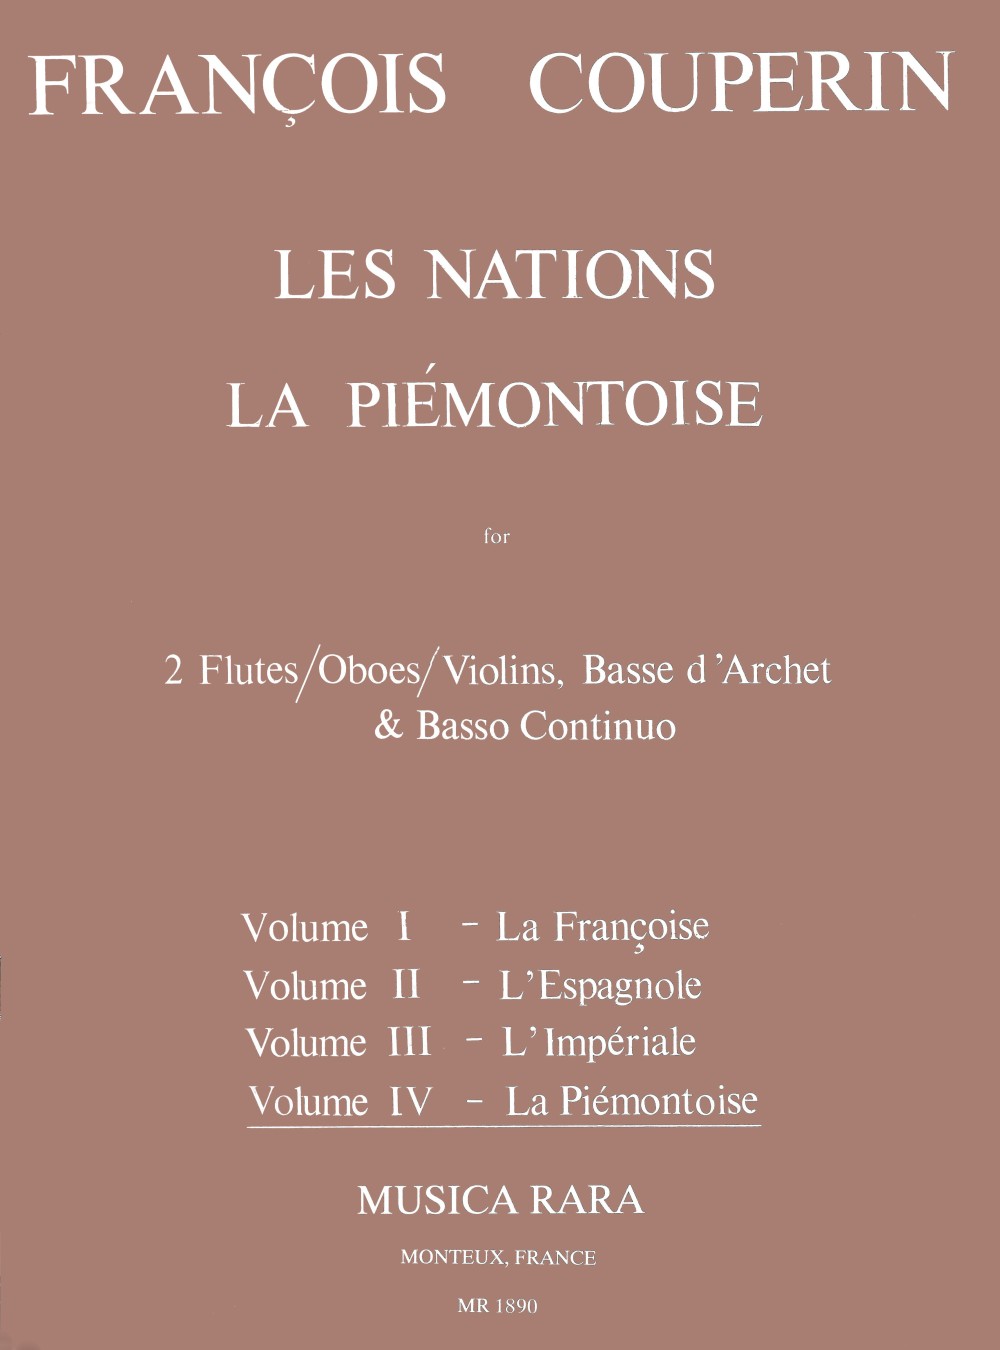 Couperin: Les Nations - Volume 4 (La Piémontoise)